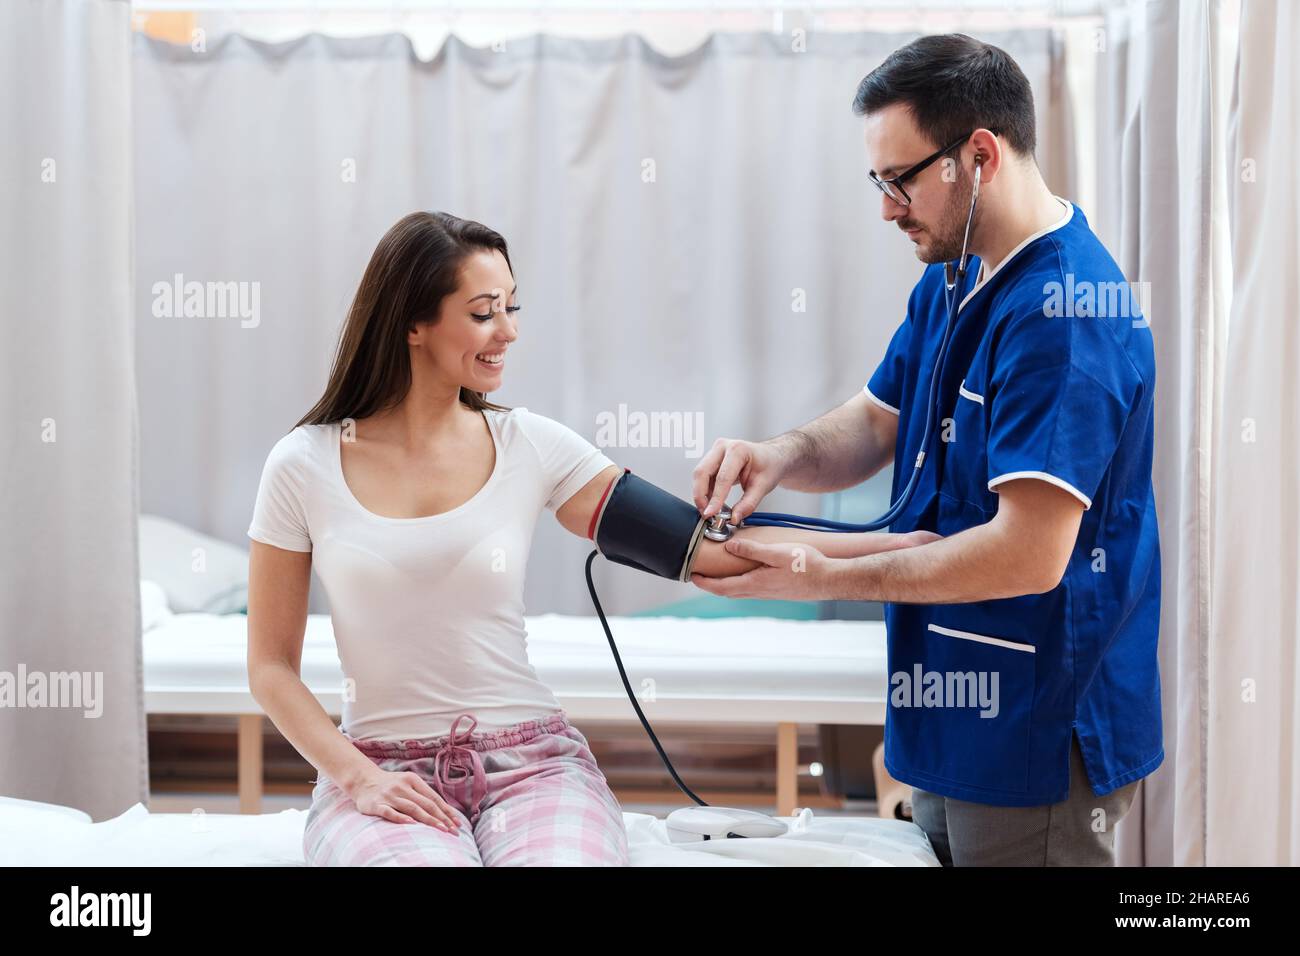 Medizinisches Personal steht und misst den Blutdruck, während sein Patient lächelt und auf dem Krankenhausbett sitzt. Stockfoto